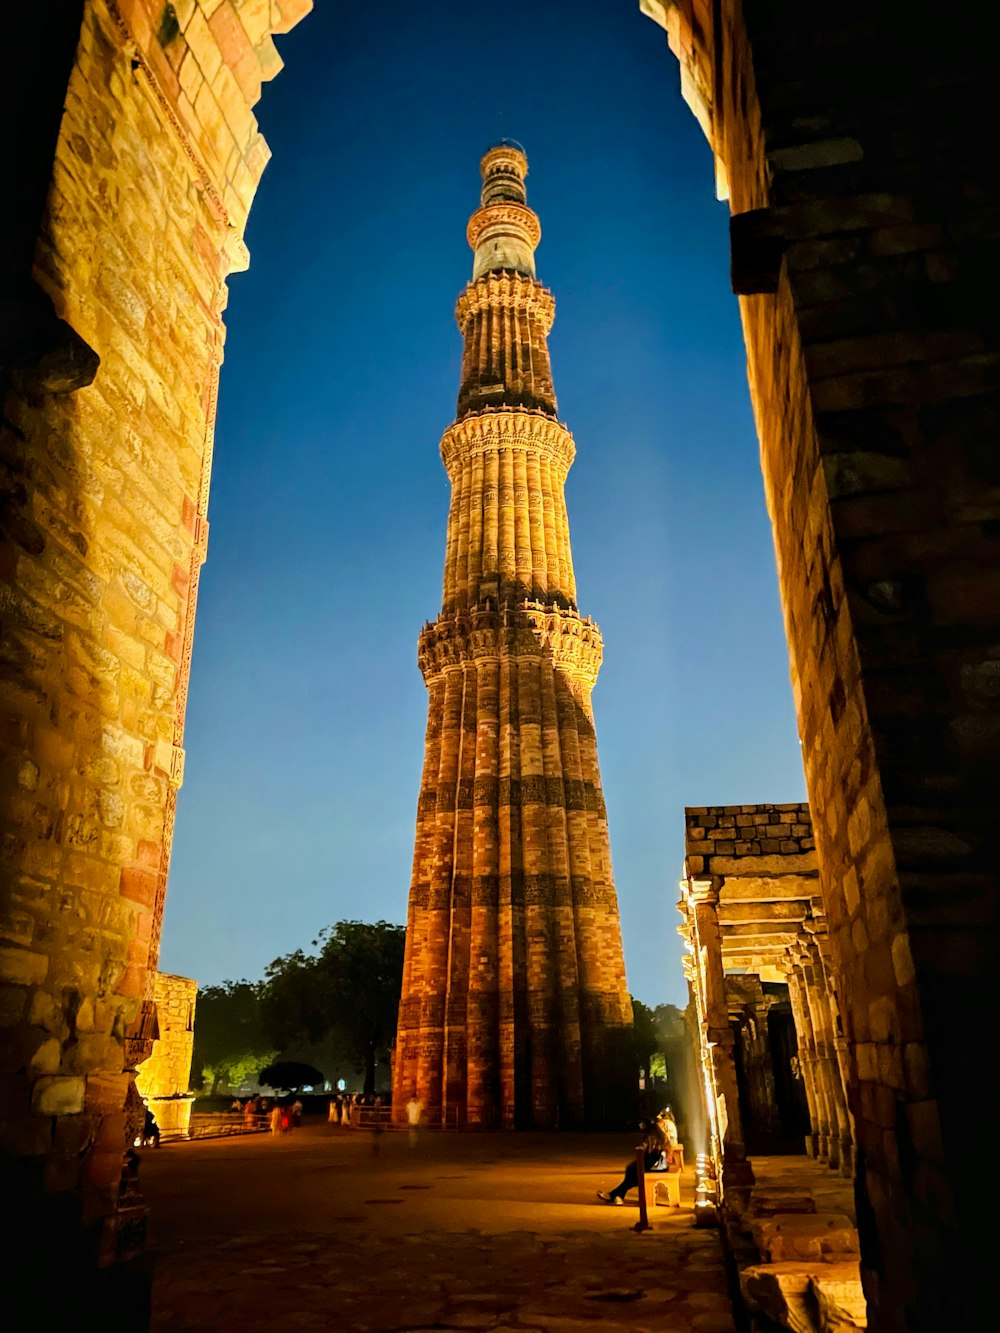 a tall tower in Qutub Minar